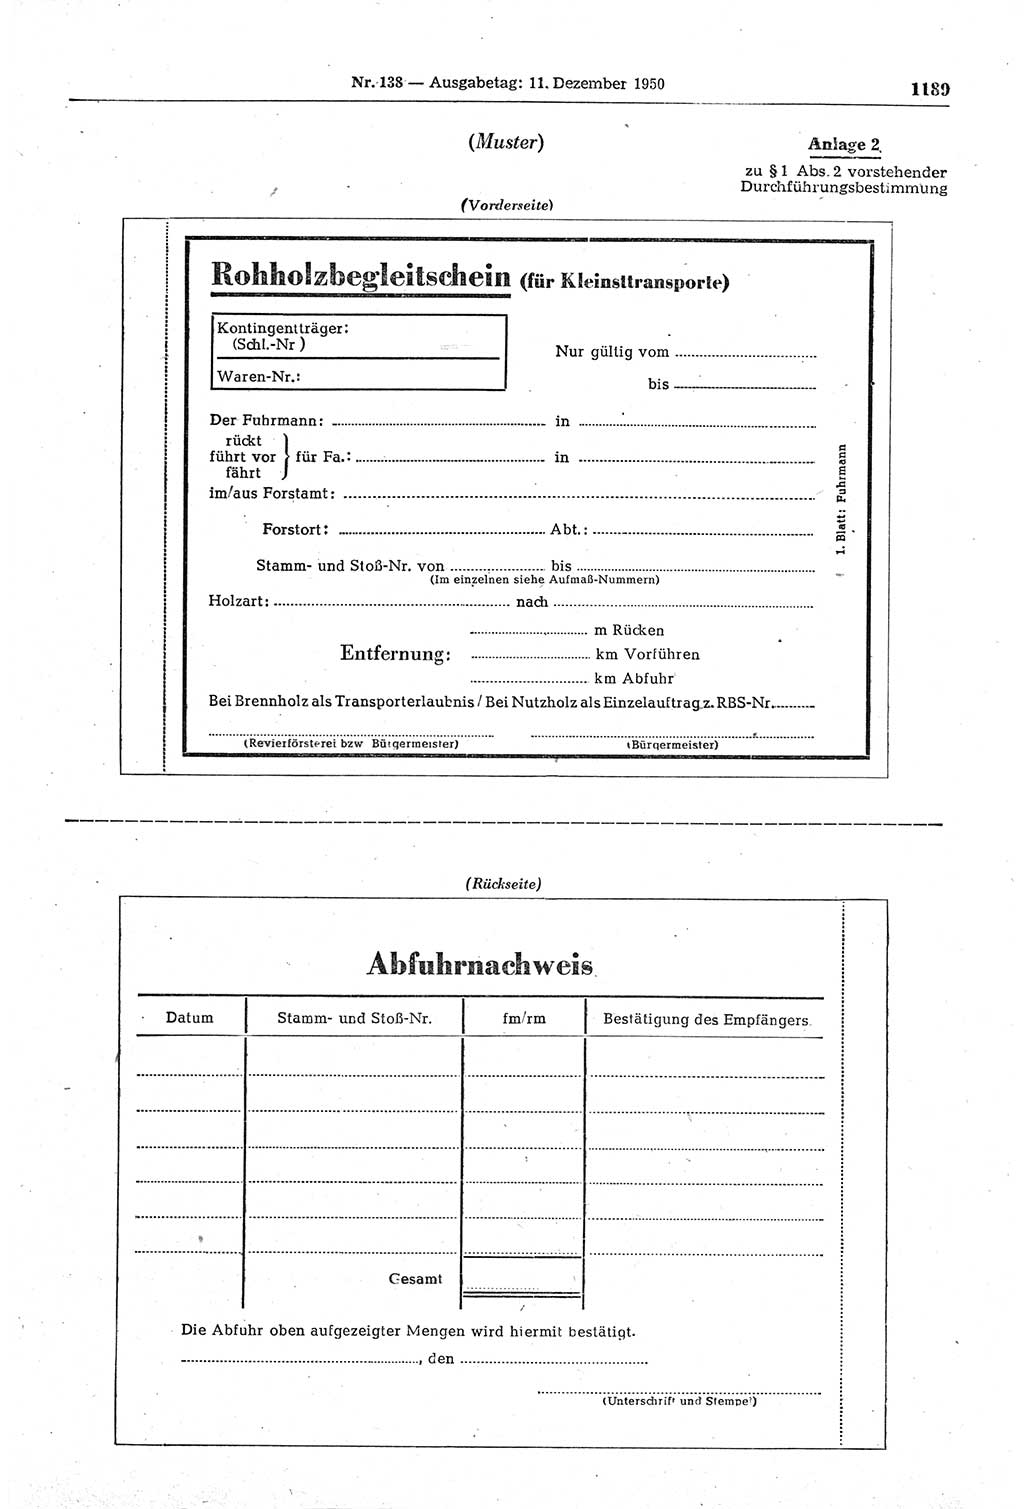 Gesetzblatt (GBl.) der Deutschen Demokratischen Republik (DDR) 1950, Seite 1189 (GBl. DDR 1950, S. 1189)